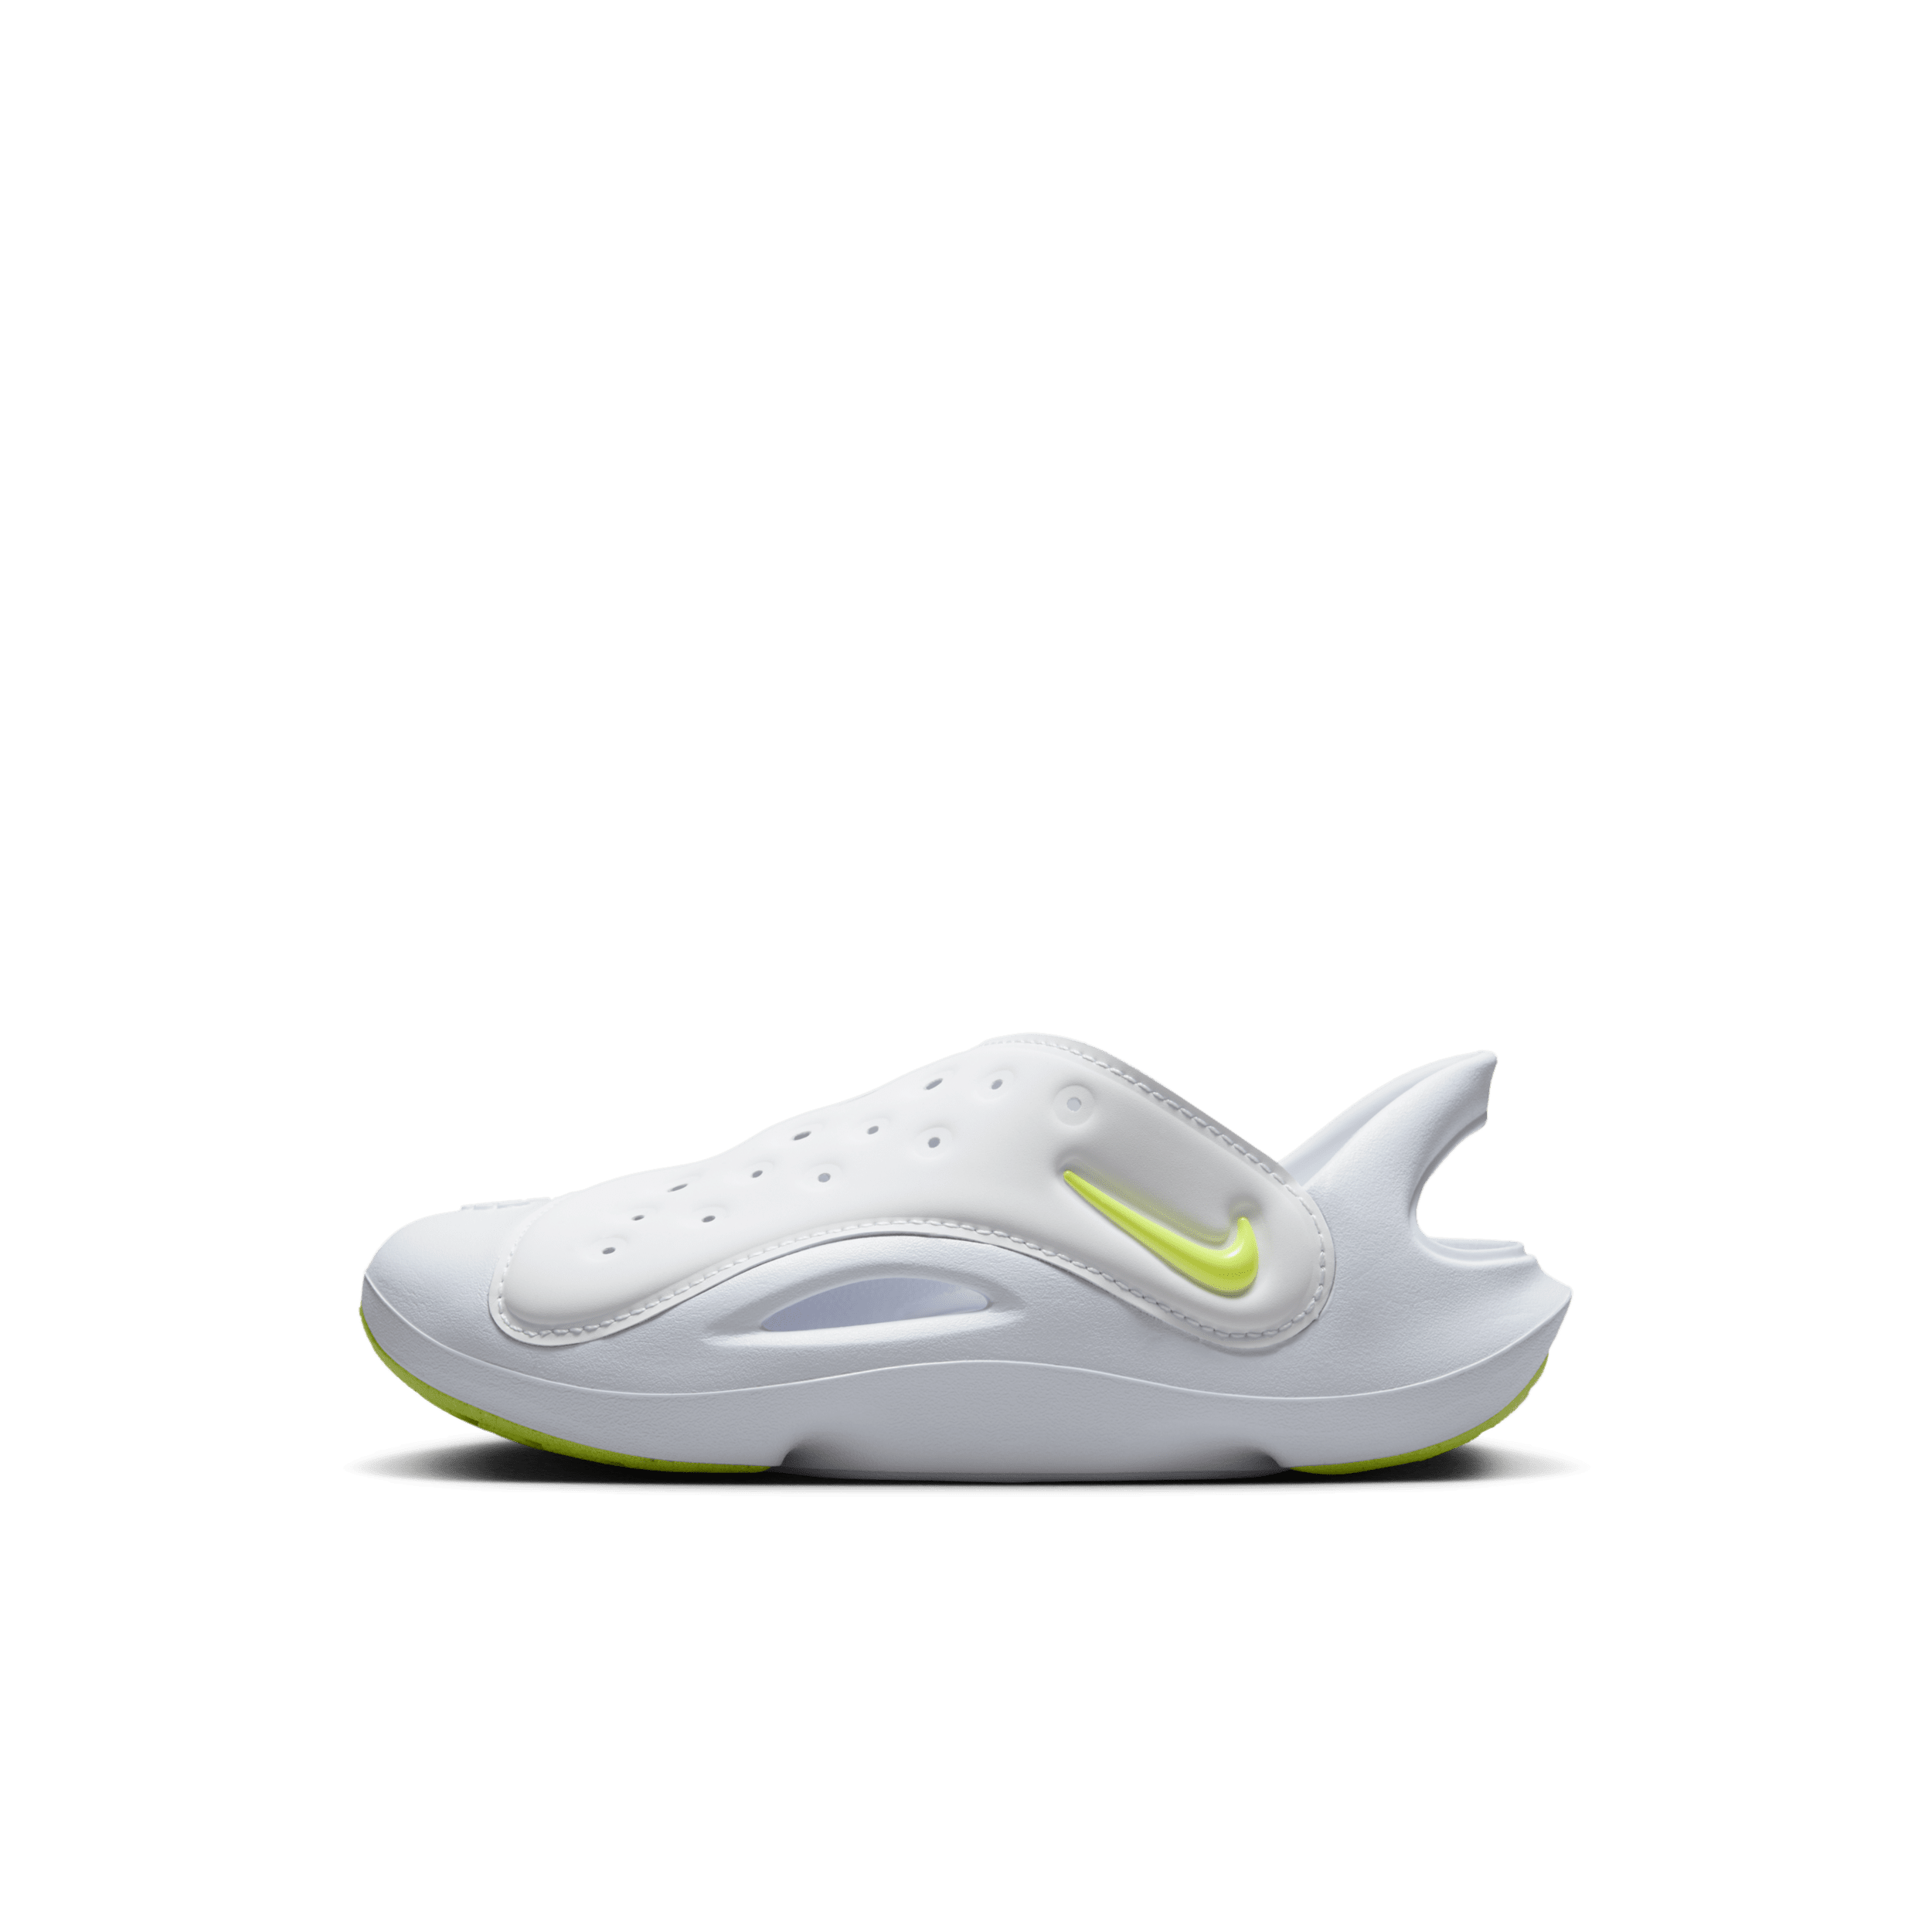 Nike Aqua Swoosh Sandalias - Niño/a pequeño/a - Blanco